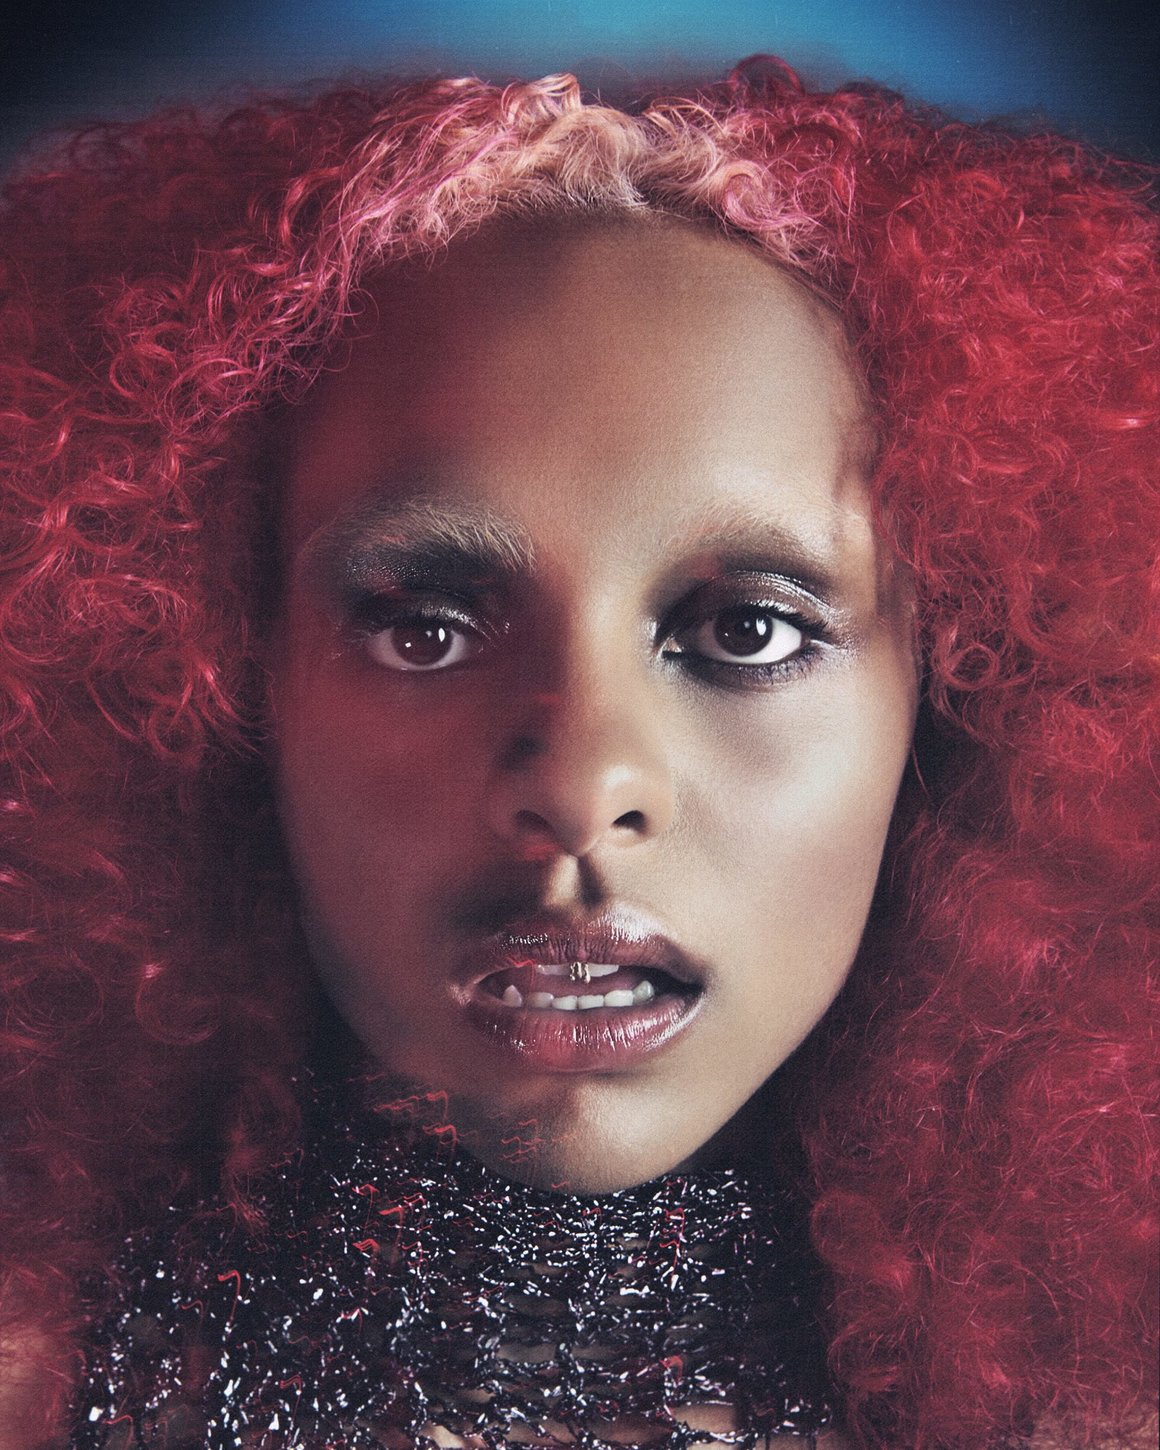 Portrait de Crystal Murray, font la teinte rouge de ses cheveux contraste avec le fond bleu.